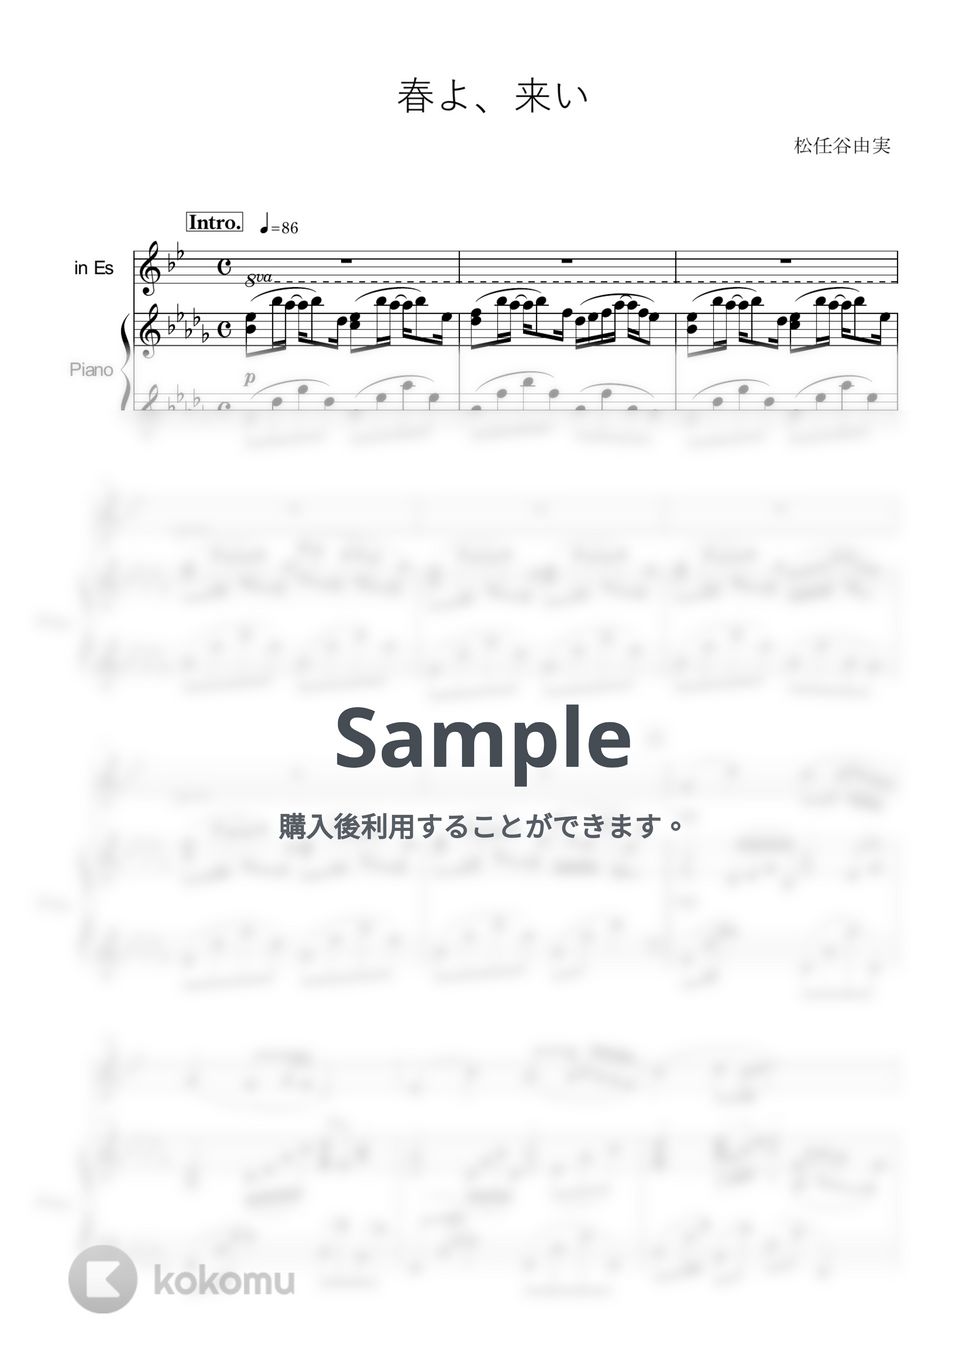 松任谷由実 - 春よ、来い (in E♭/ソロ/アルトサックス/ピアノ伴奏/春よ来い/松任谷由美) by enorisa